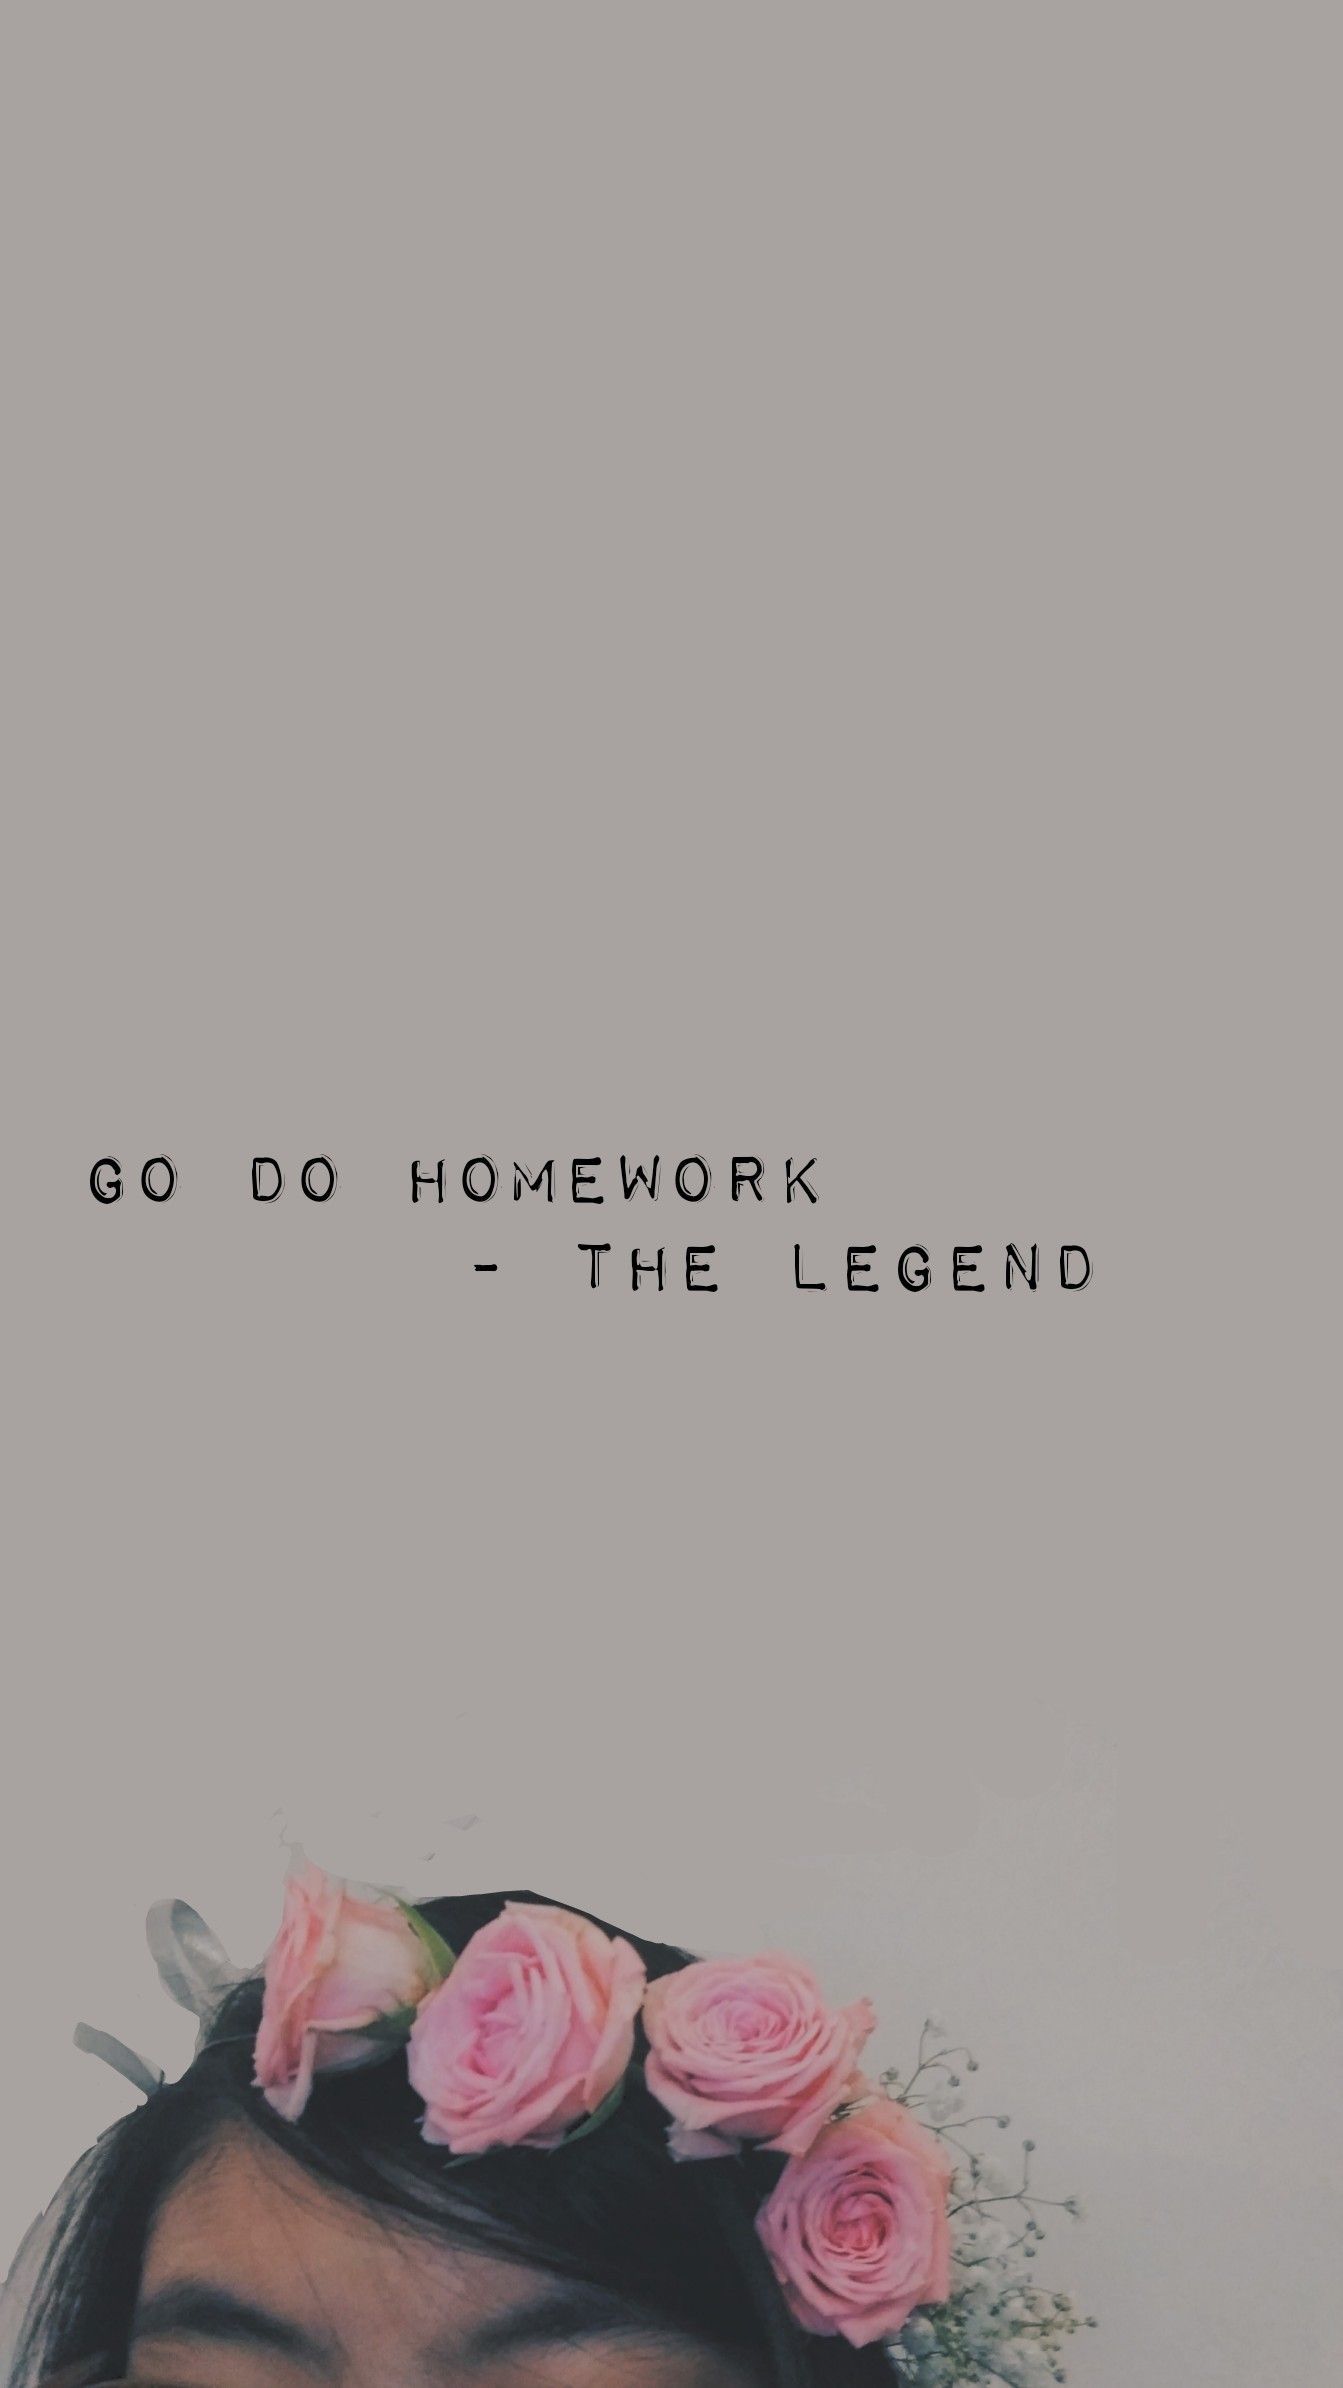 go do homework -the legend aesthetic wallpaper study motivation